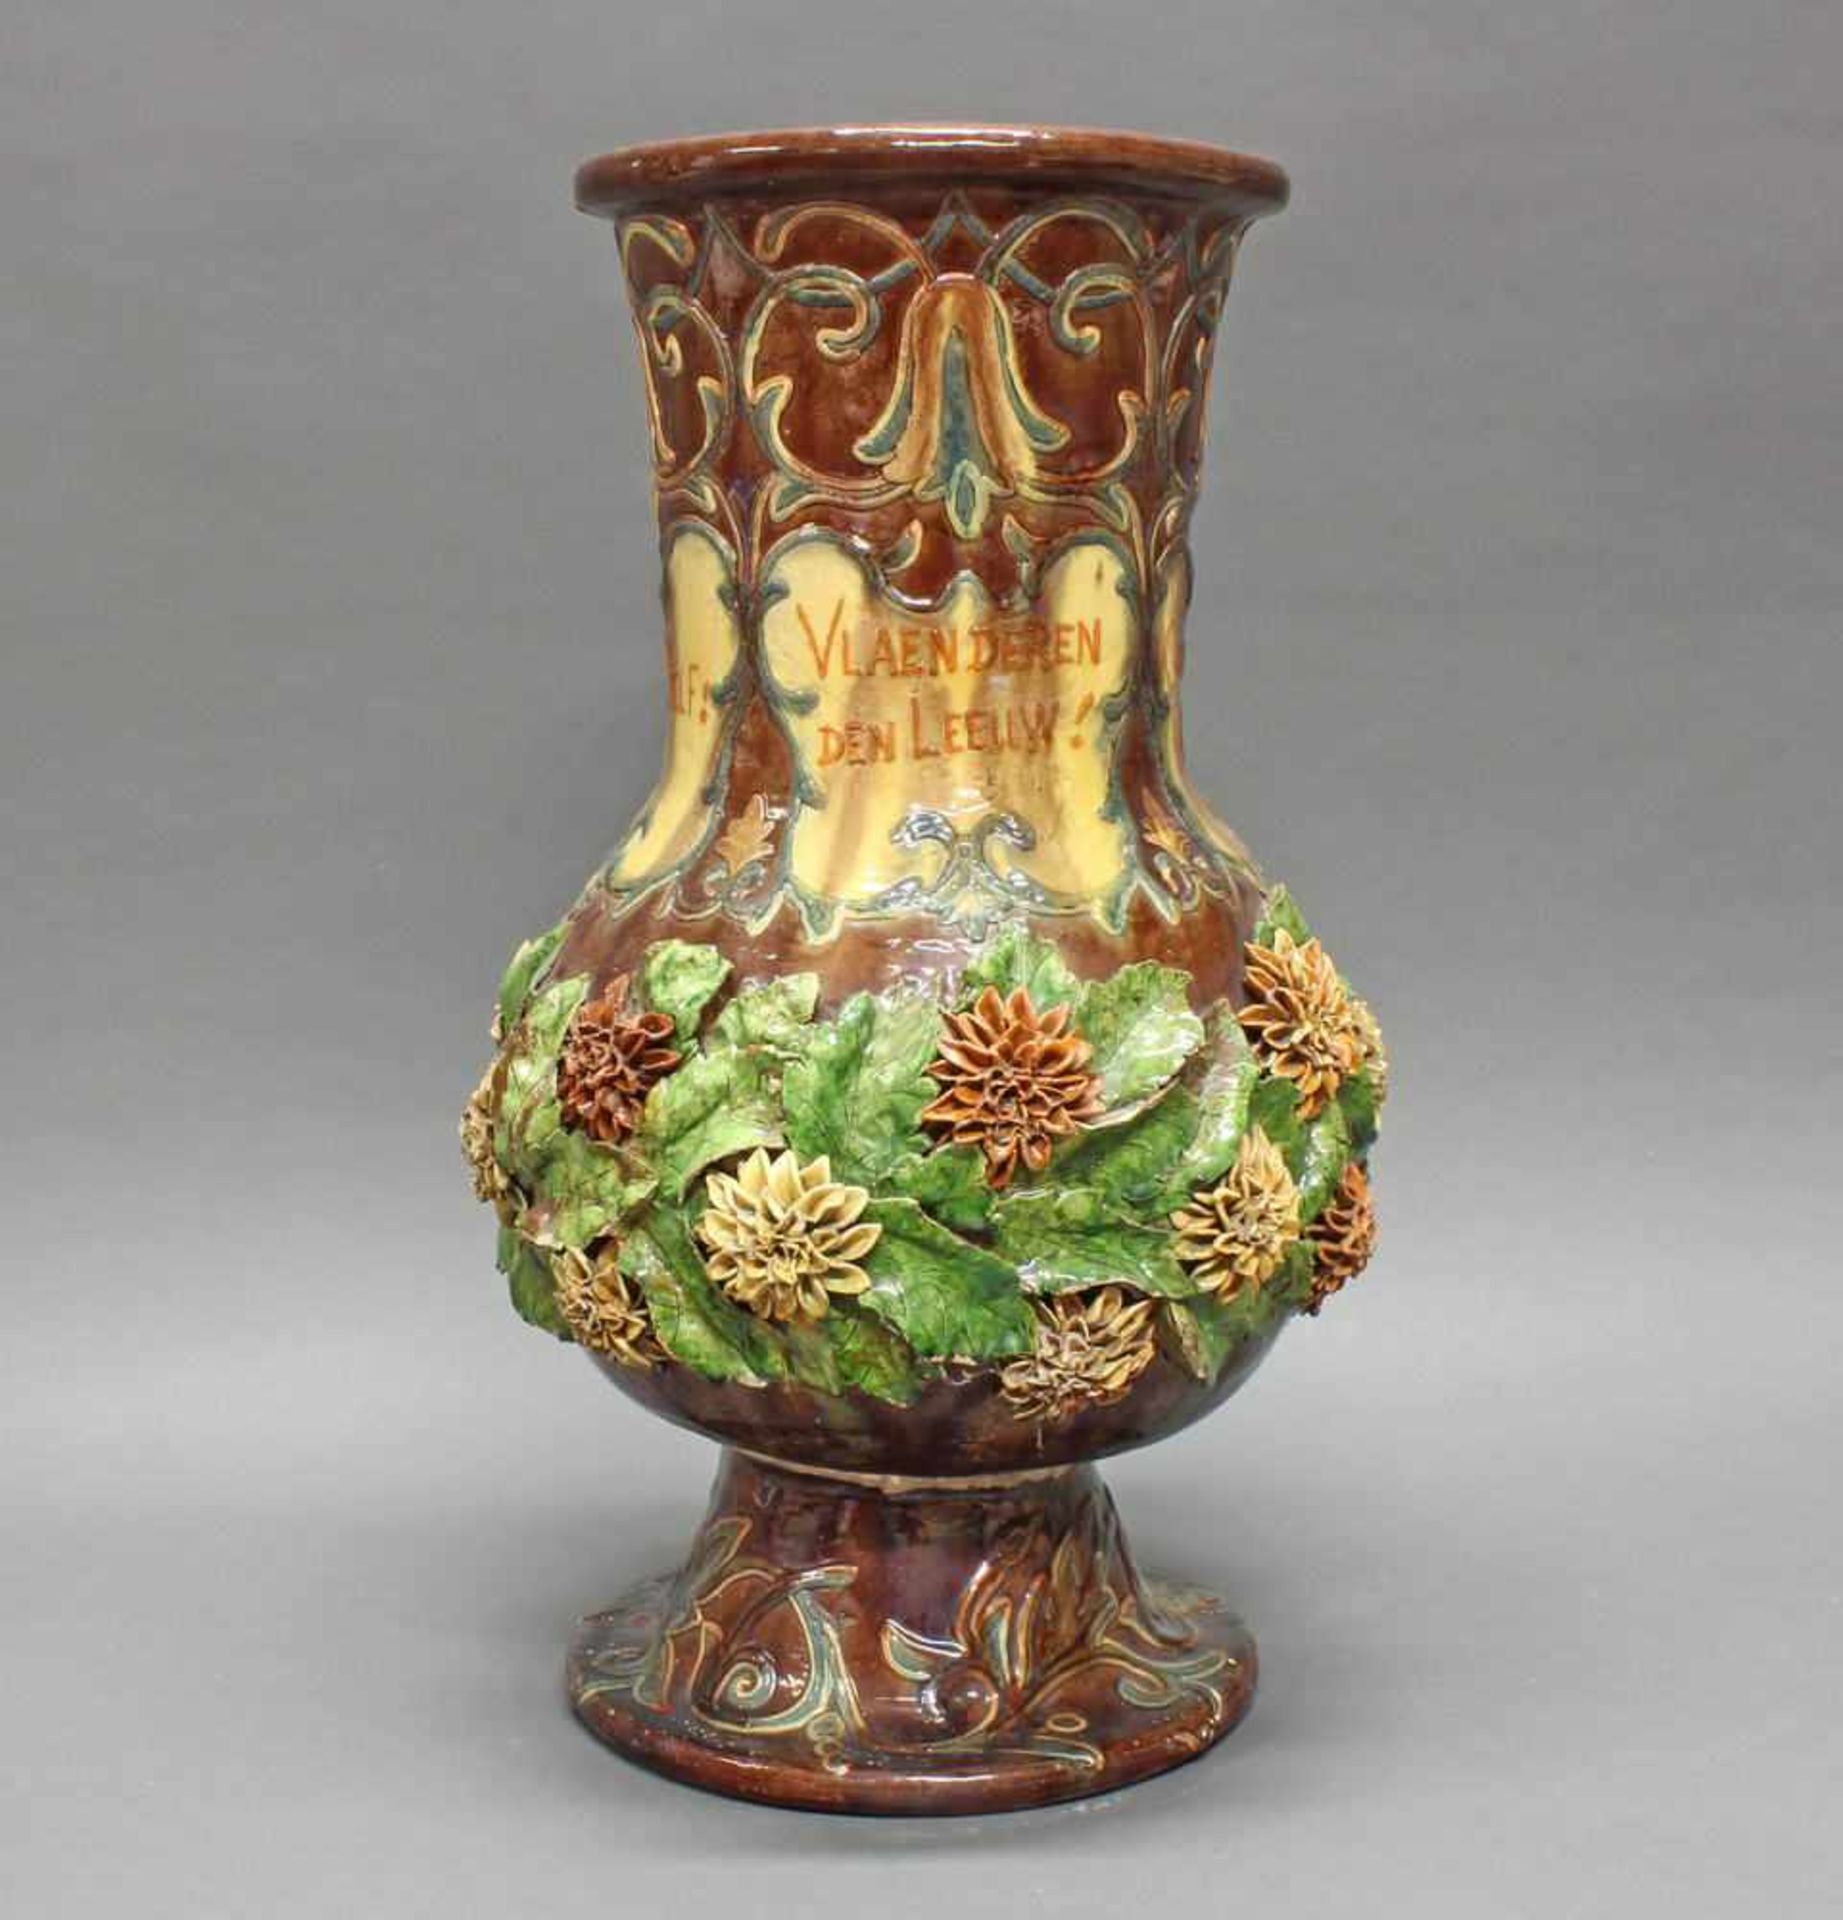 Vase, Keramik, Flandern, 1889, signiert L. Maes Thornhout 1889, polychrom, mit aufgesetzten Blüten - Image 2 of 10